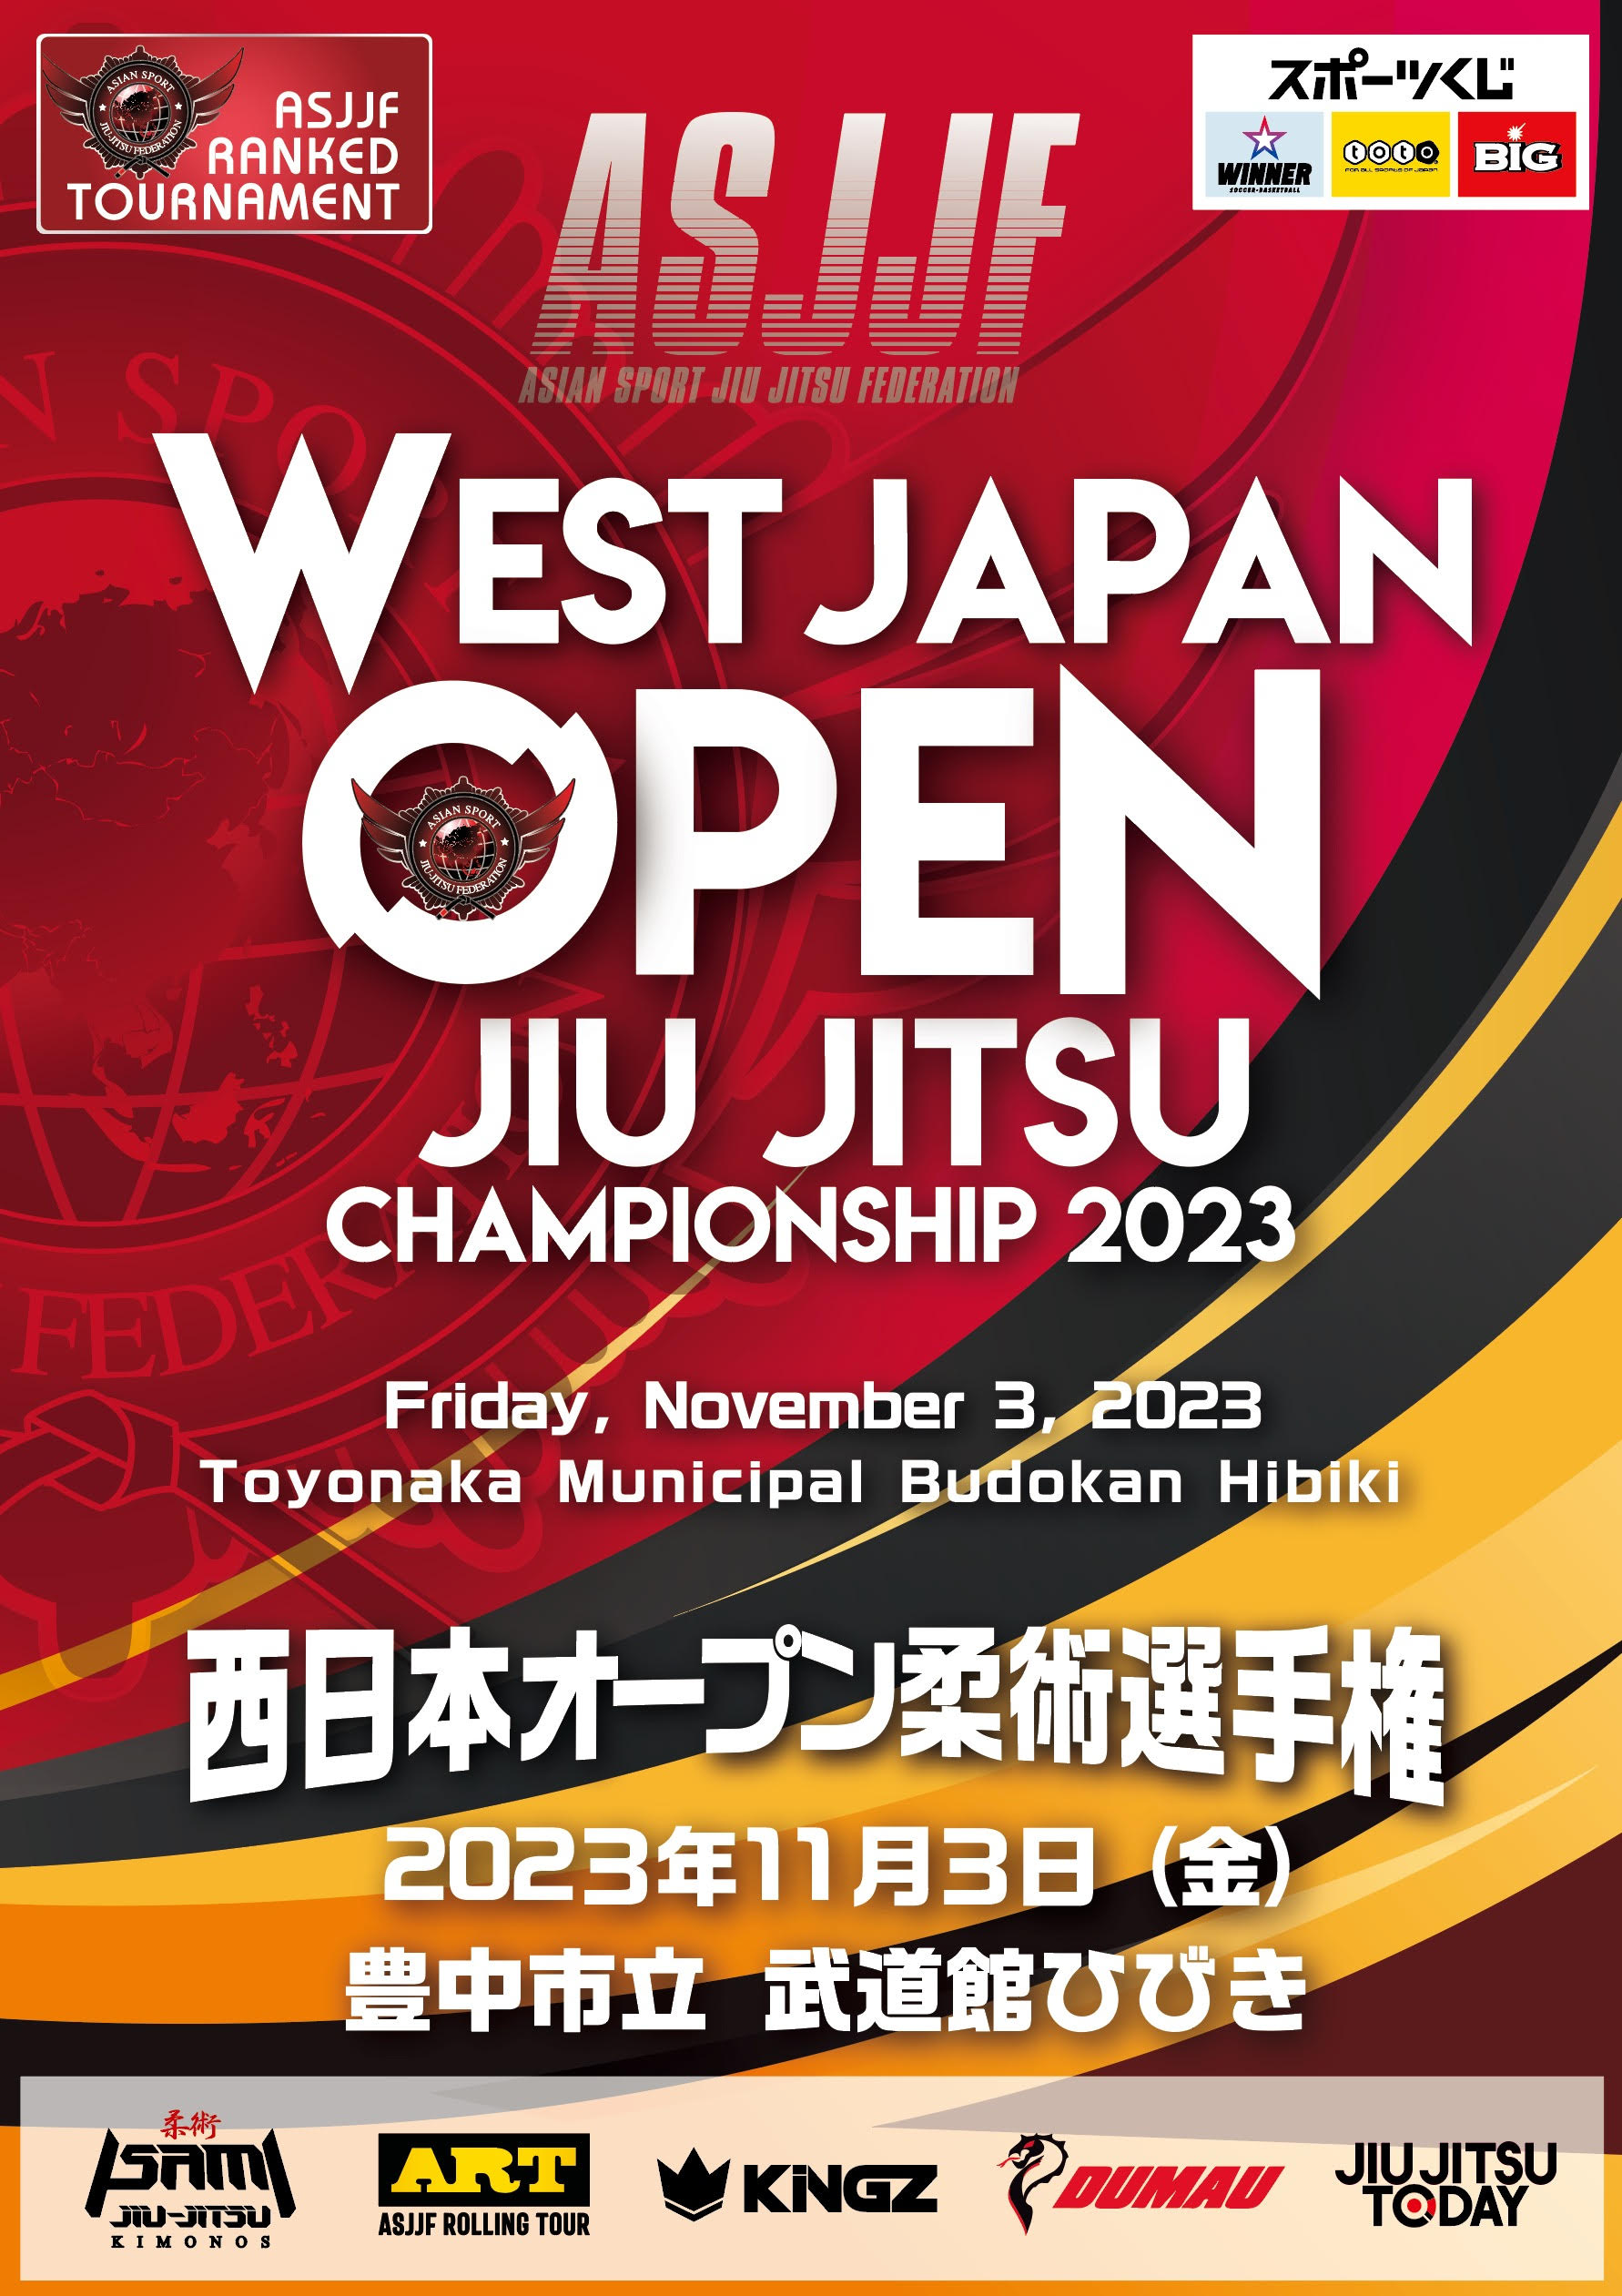 west japan open jiu jitsu championship 2023